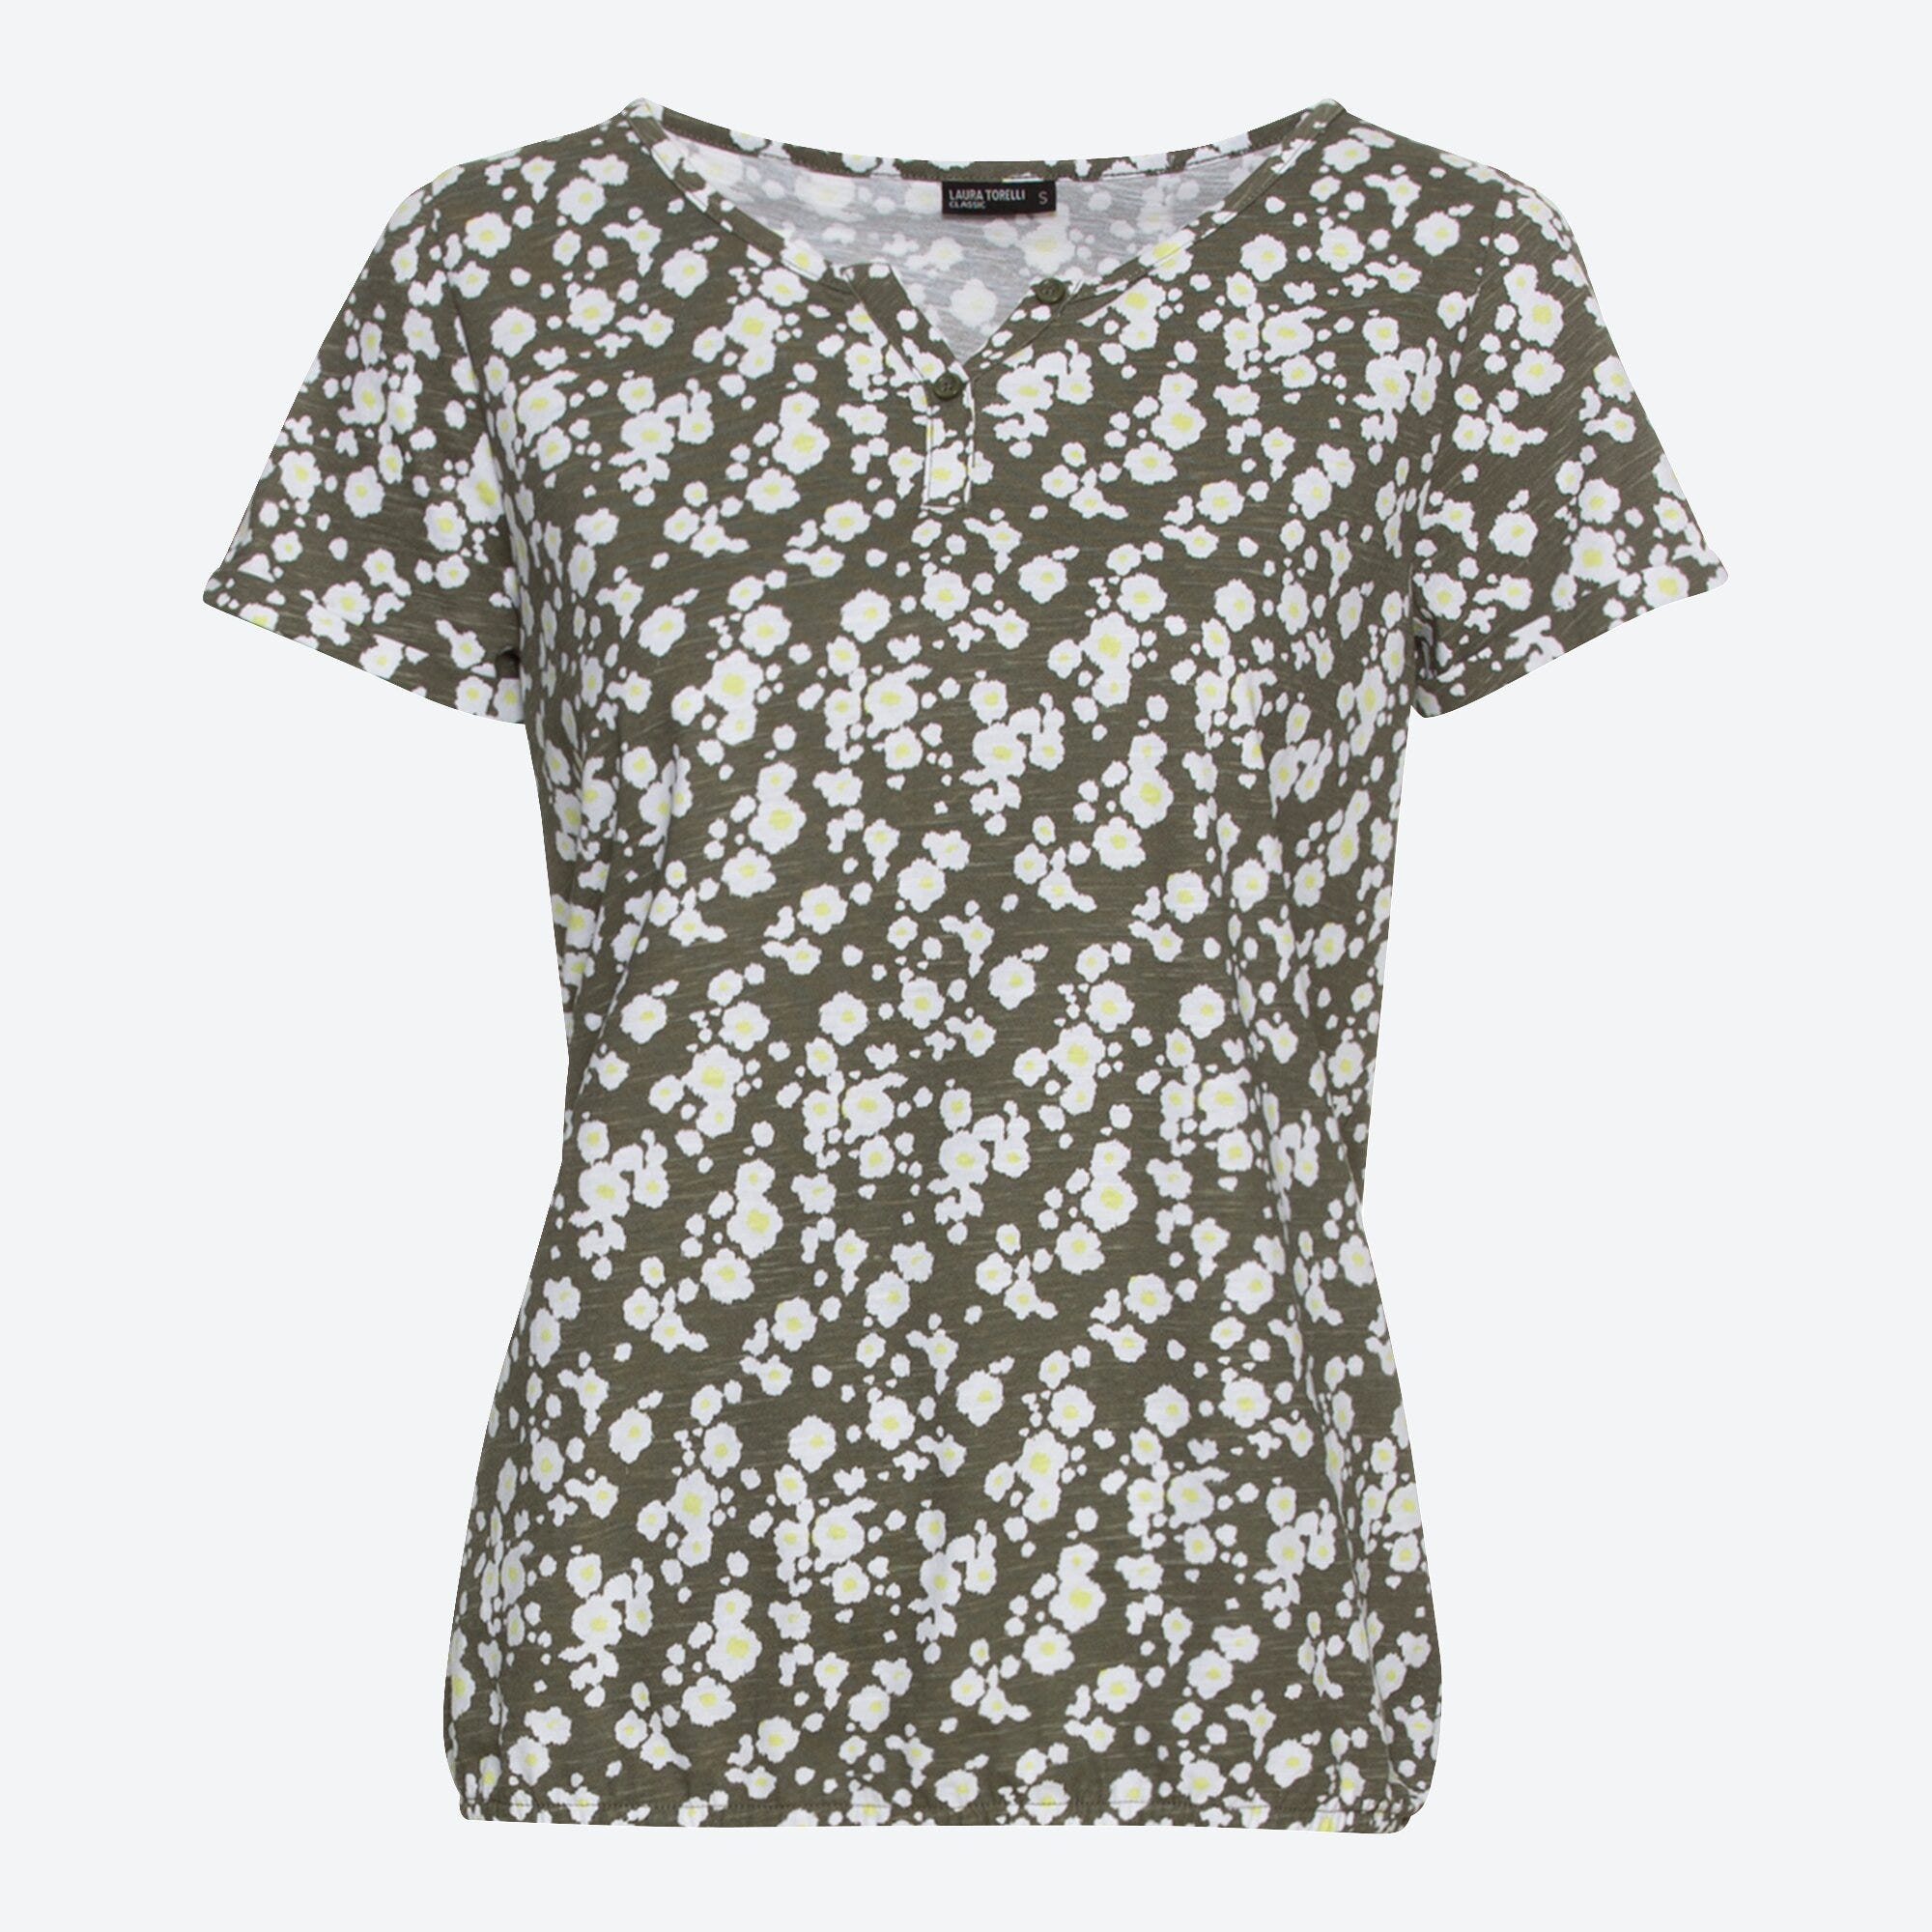 Damen-T-Shirt mit Blümchen-Muster